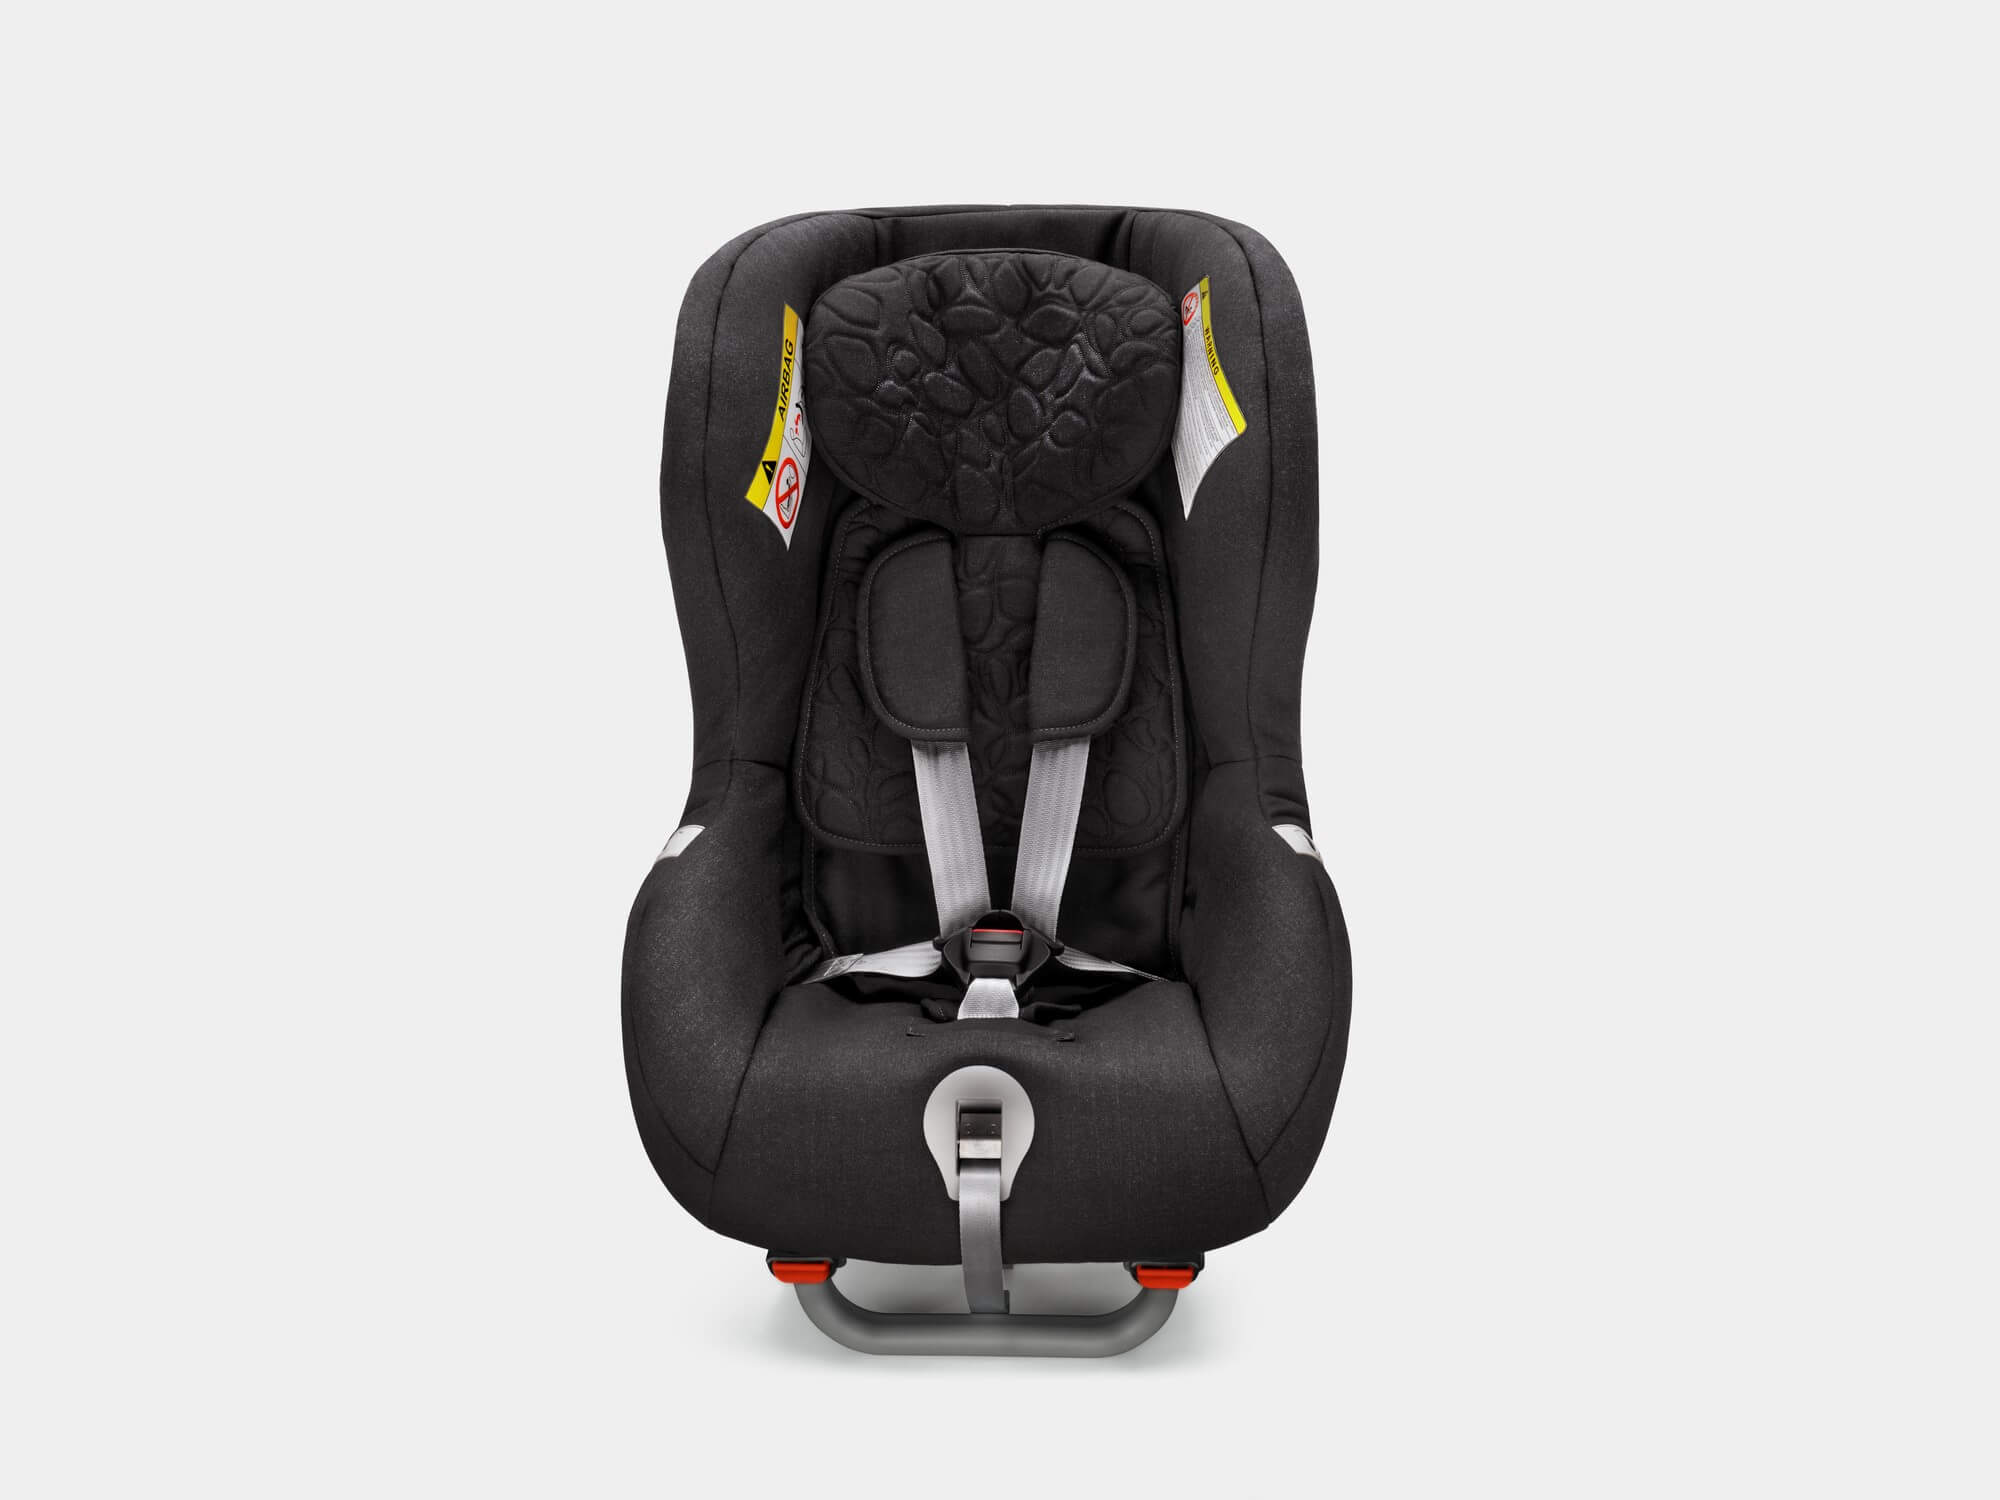 Устанавливаемое против направления движения кресло Volvo для детей в возрасте от 9 месяцев до 6 лет (9–25 кг).